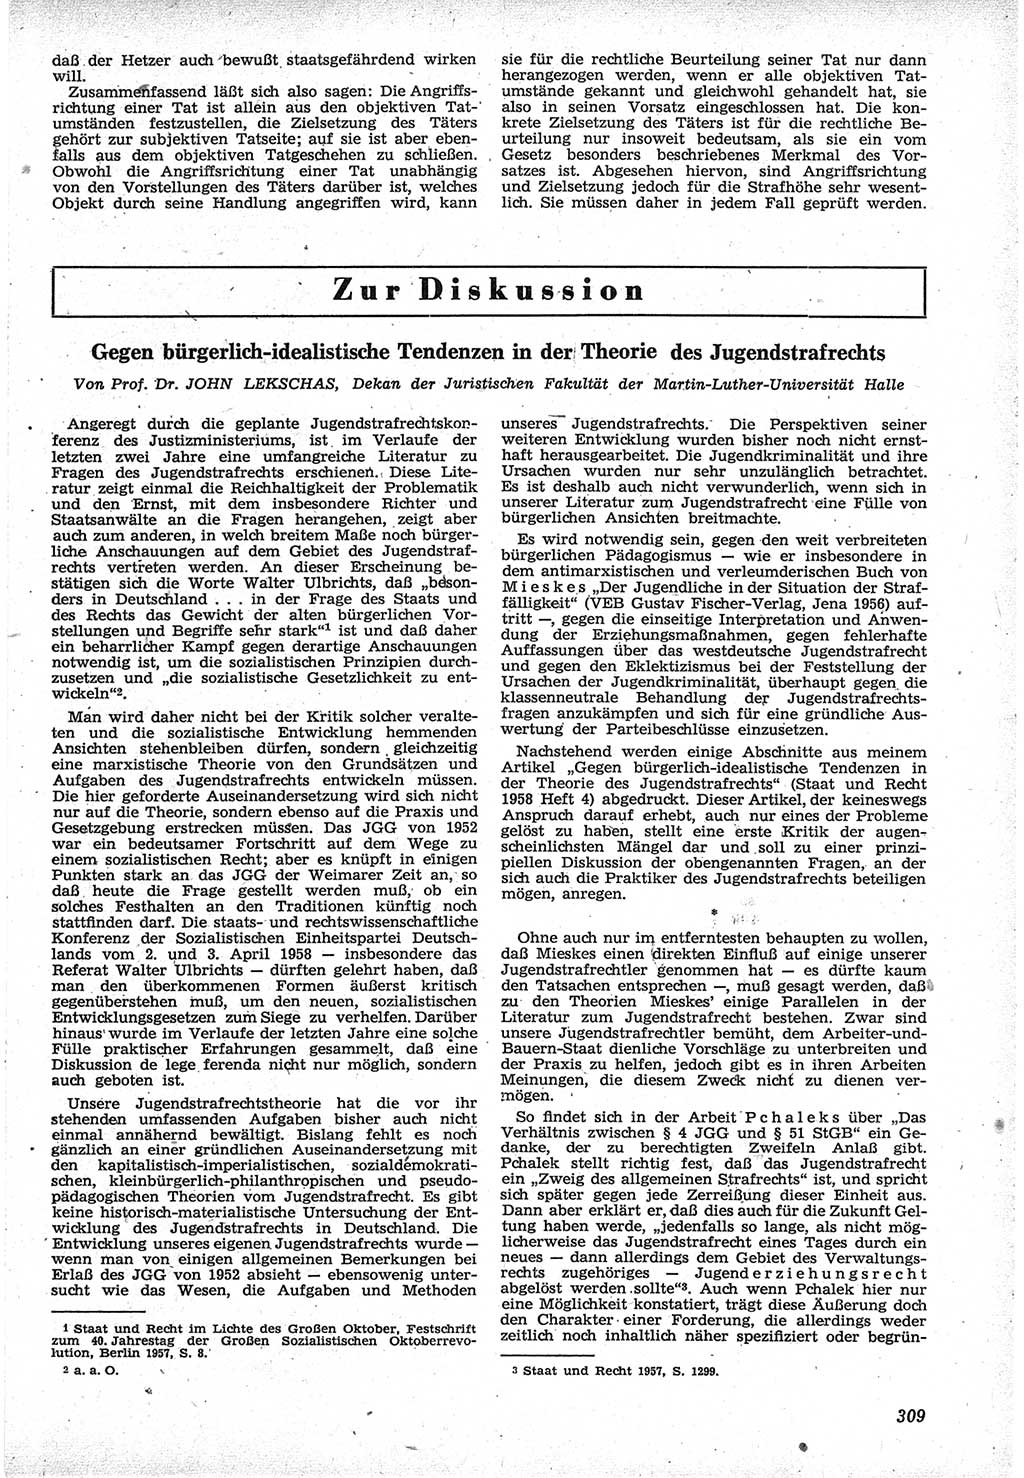 Neue Justiz (NJ), Zeitschrift für Recht und Rechtswissenschaft [Deutsche Demokratische Republik (DDR)], 12. Jahrgang 1958, Seite 309 (NJ DDR 1958, S. 309)